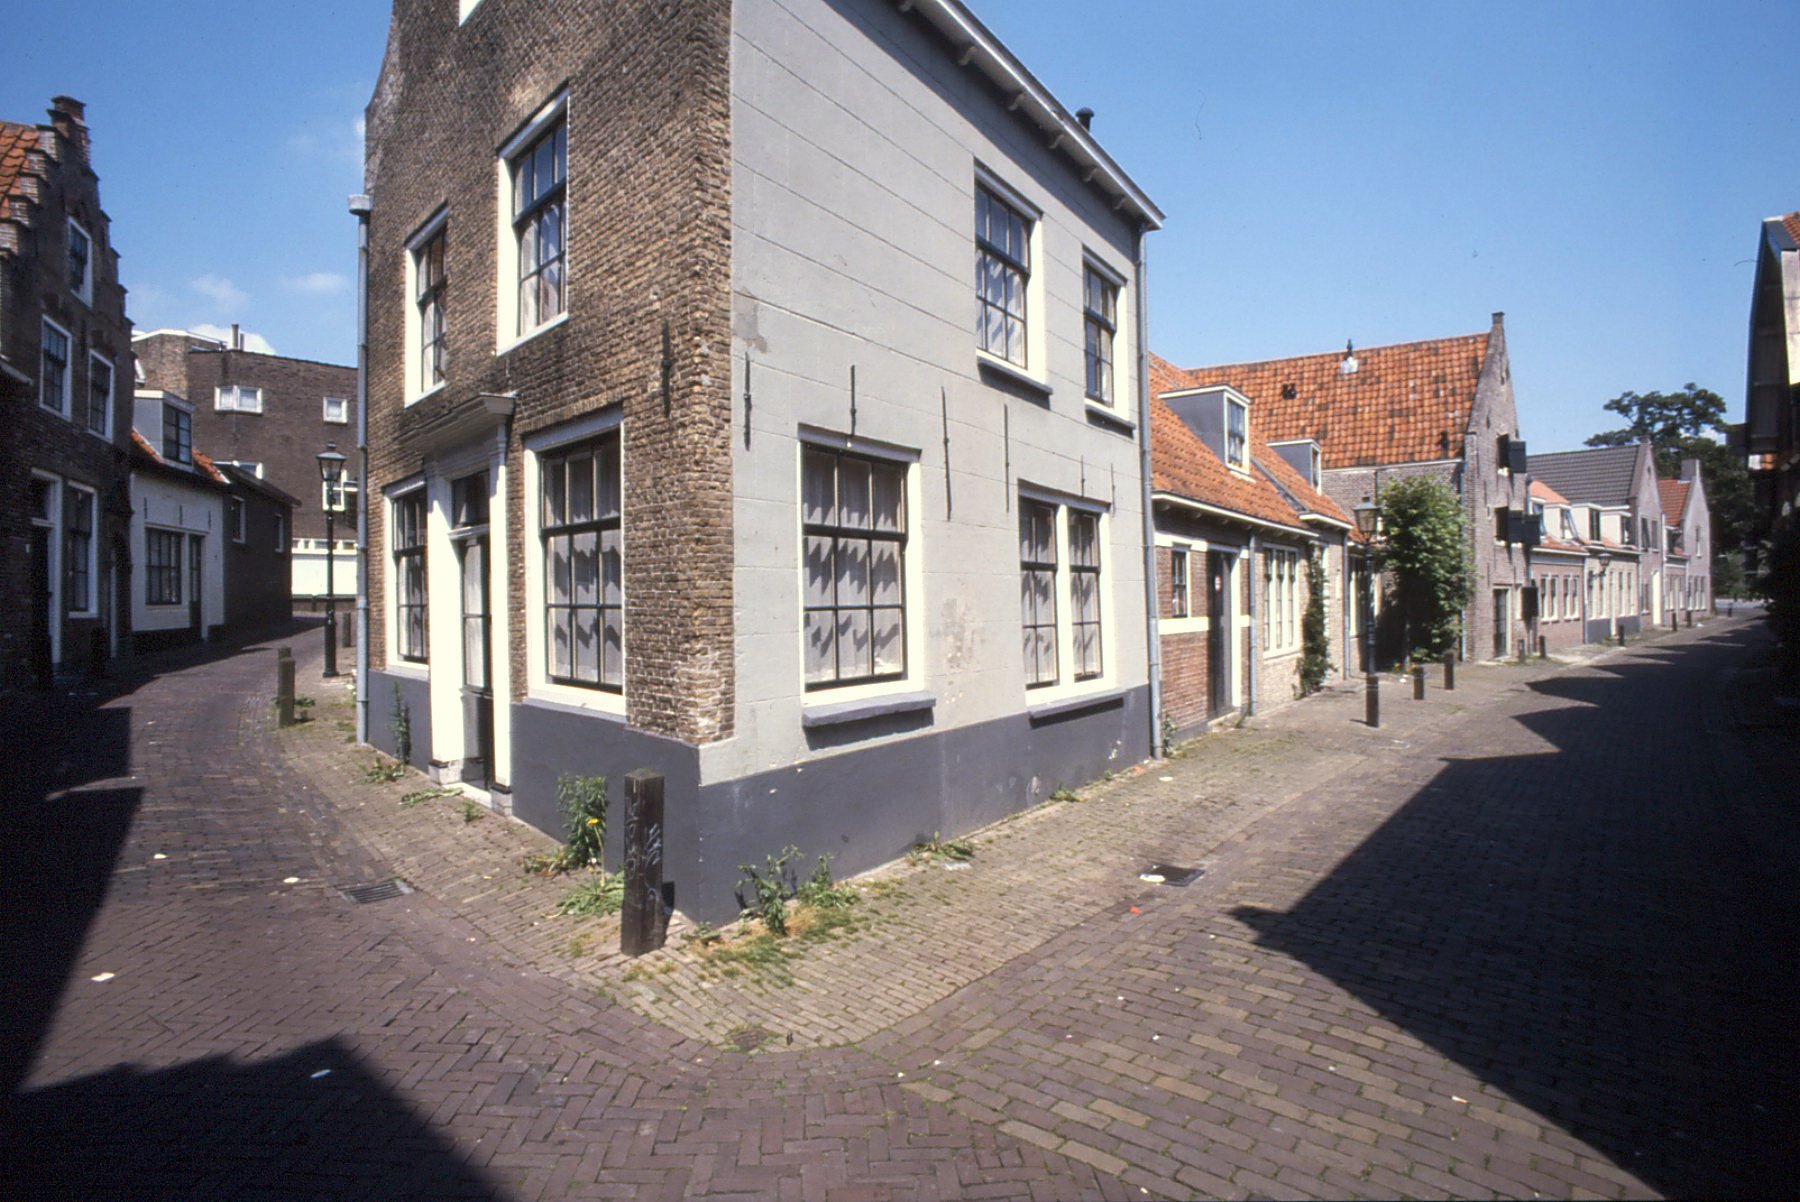 Links de St. Jacobstraat, rechts de Pyntorenstraat, ca. 1990.